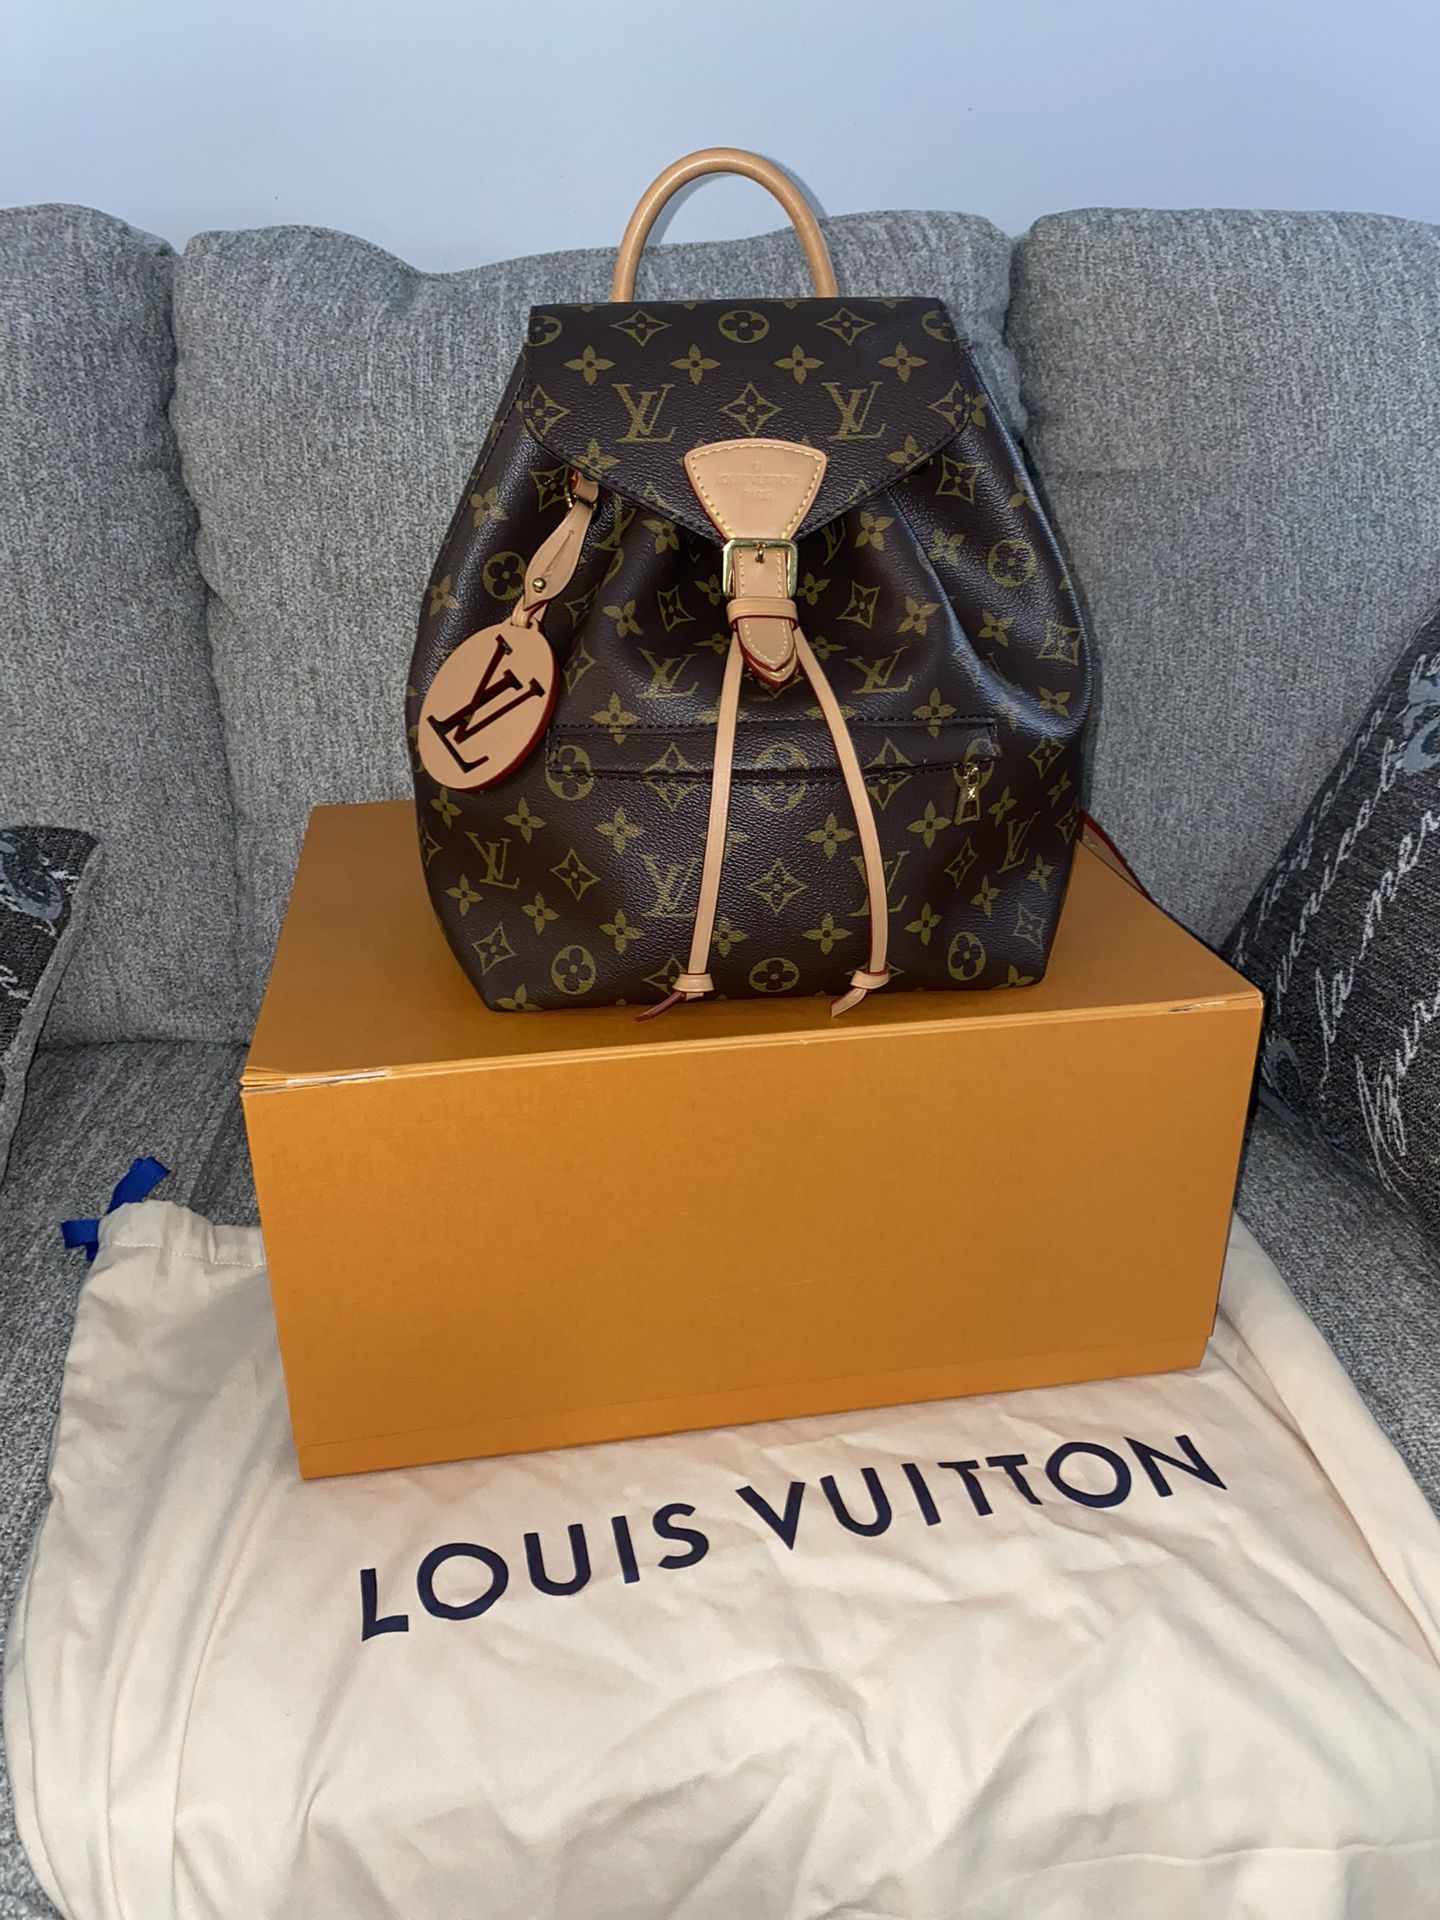 Louis Vuitton Back Pack 